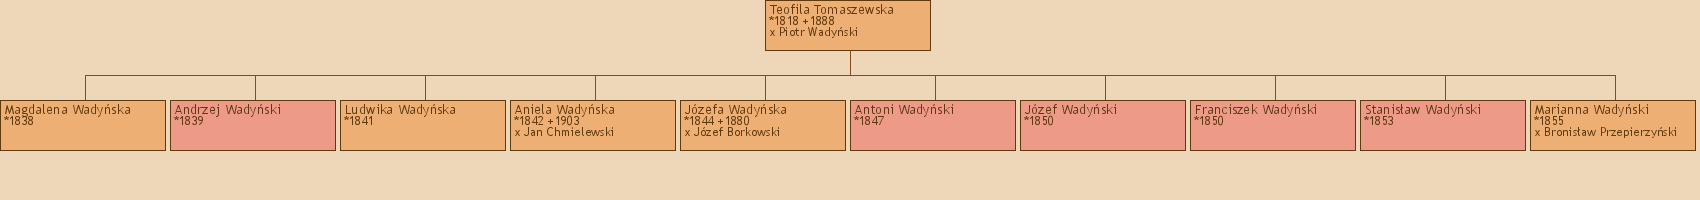 Drzewo genealogiczne - Teofila Tomaszewska